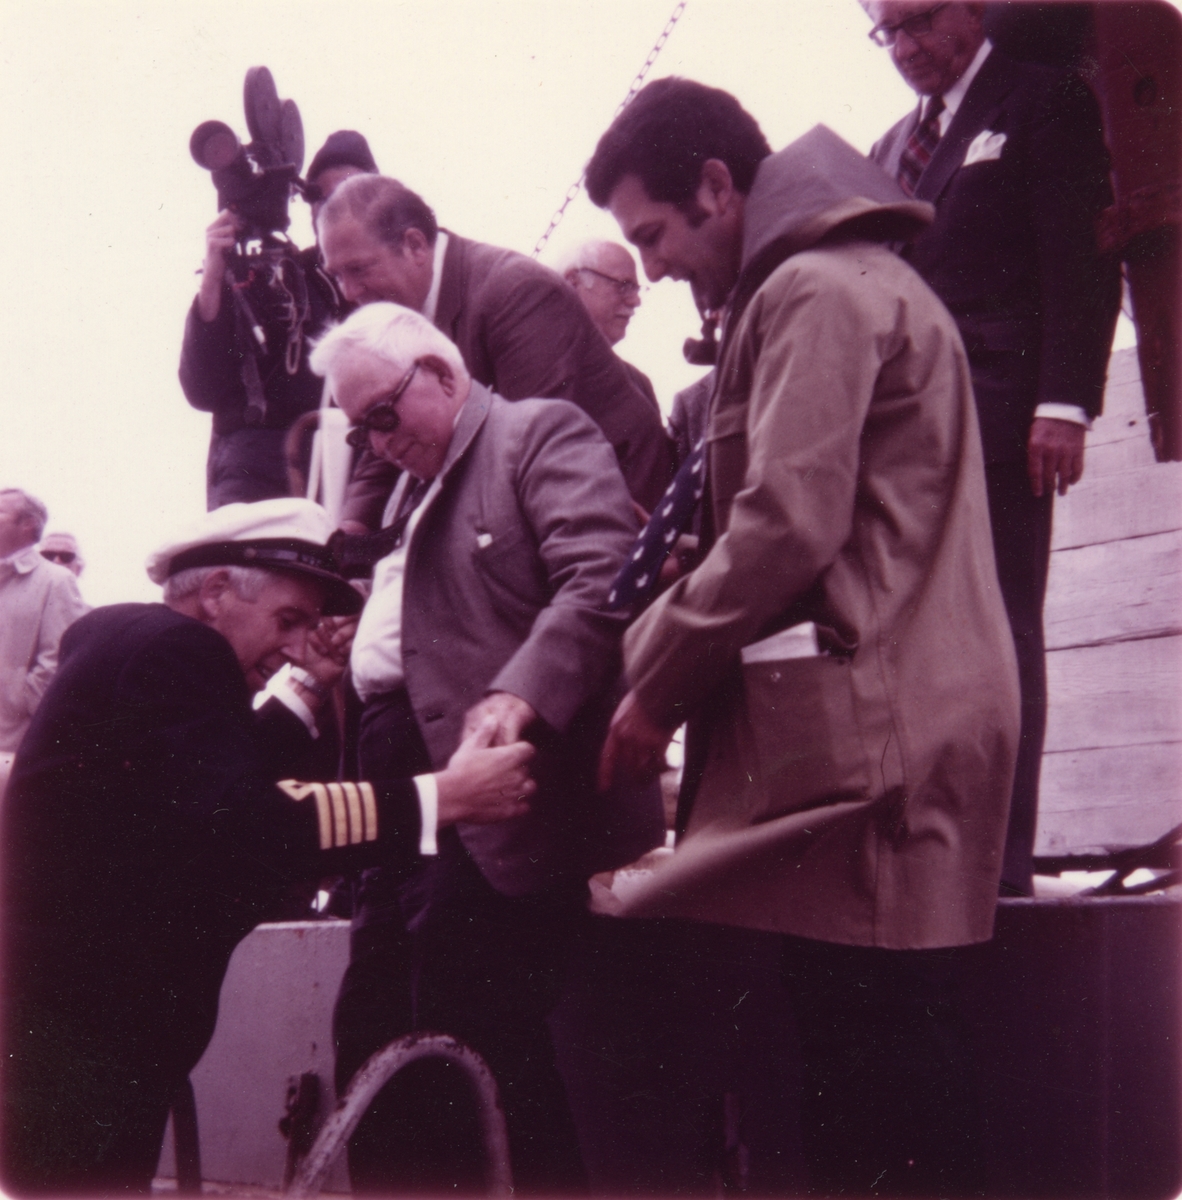 Kapteinen på 'Star Billabong' hilser på ukjent person i forbindelse med hjemsending av 'Gjøa' i 1972